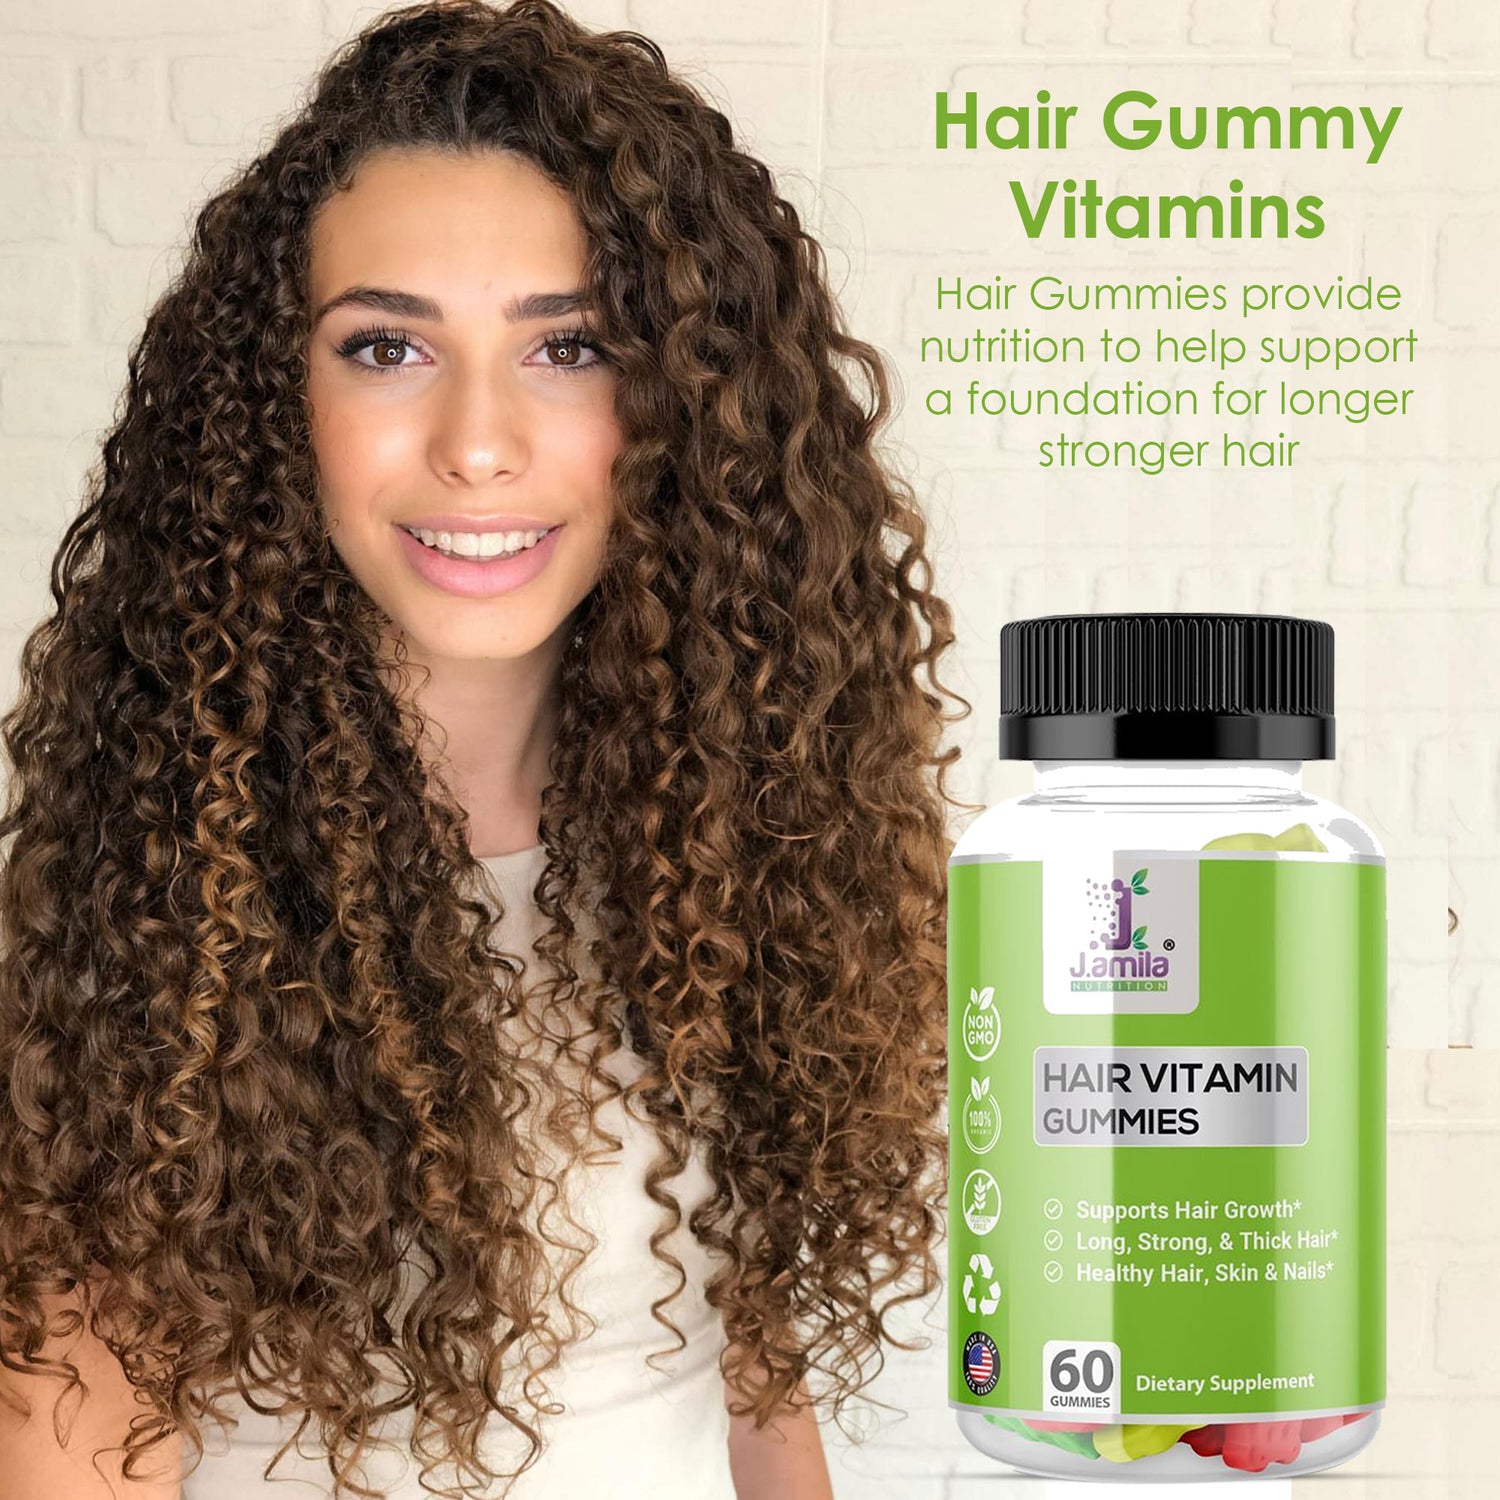 J. AMILA Hair Vitamin Gummies (60ct)